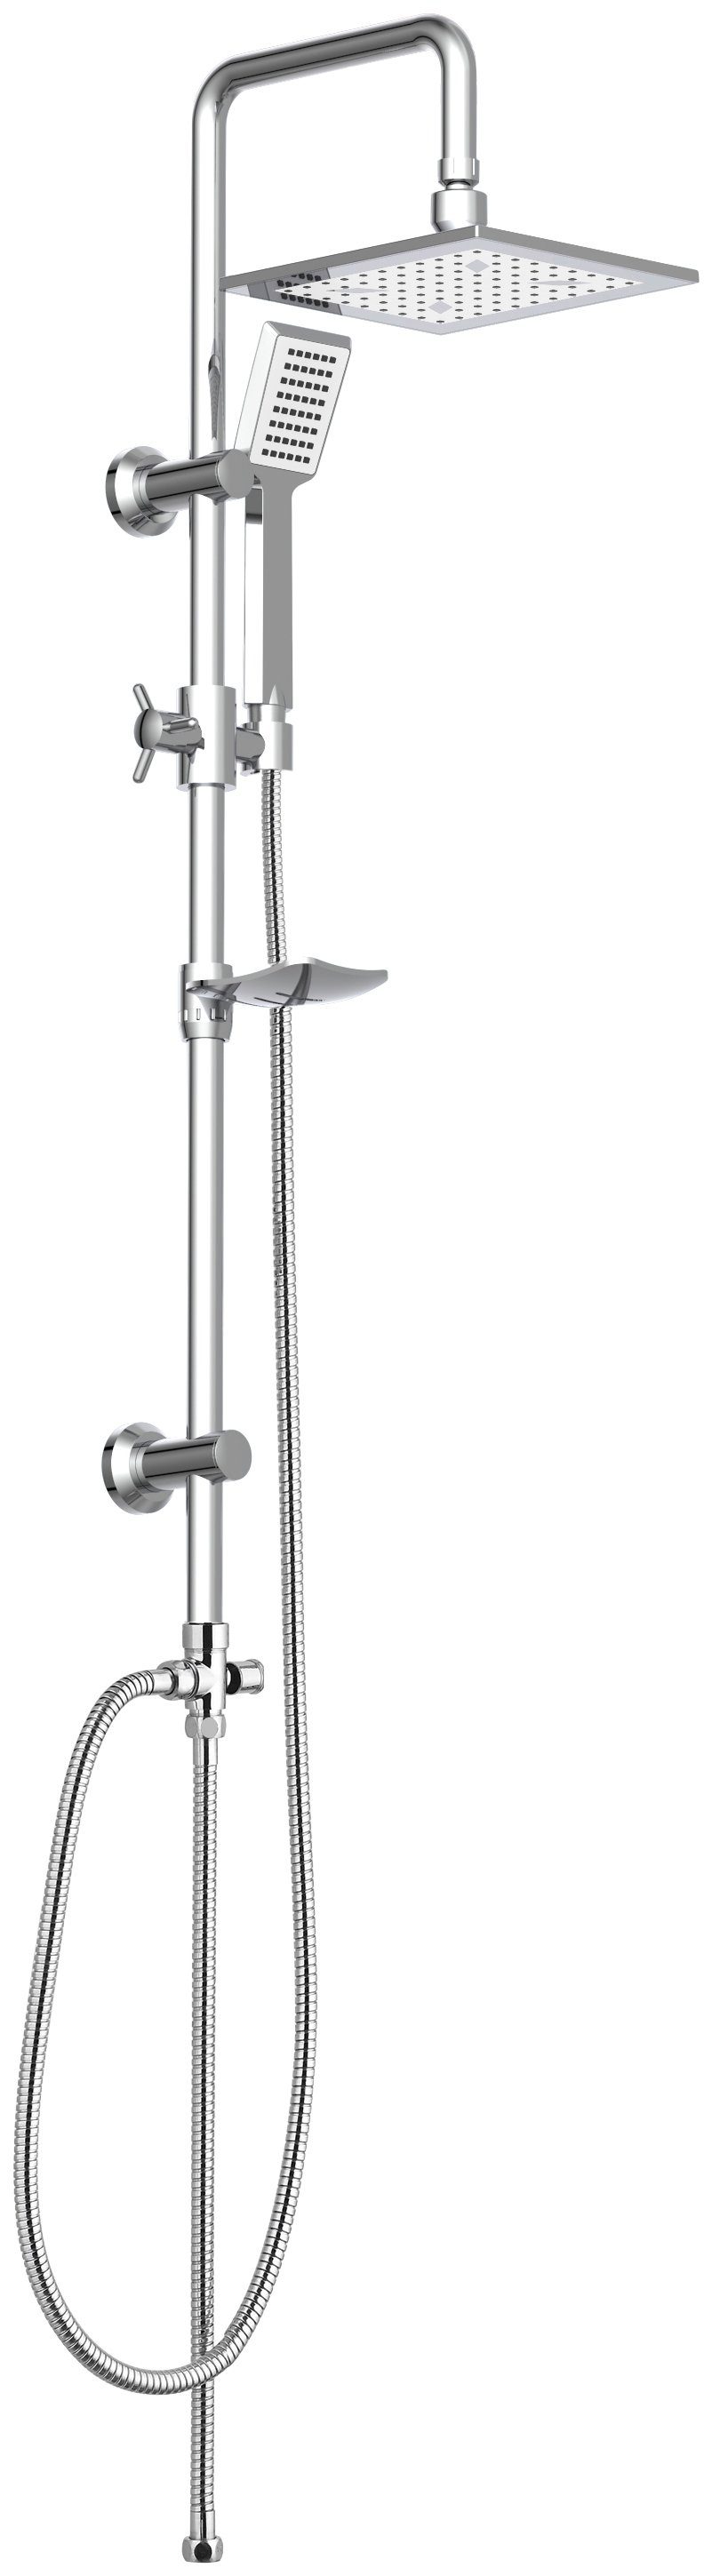 Eisl Duschsystem »EASY COOL«, Höhe 95 cm, Regendusche ohne Armatur,  Duschsystem mit Seifenschale, Duschbrause, Dusche Chrom online kaufen | OTTO